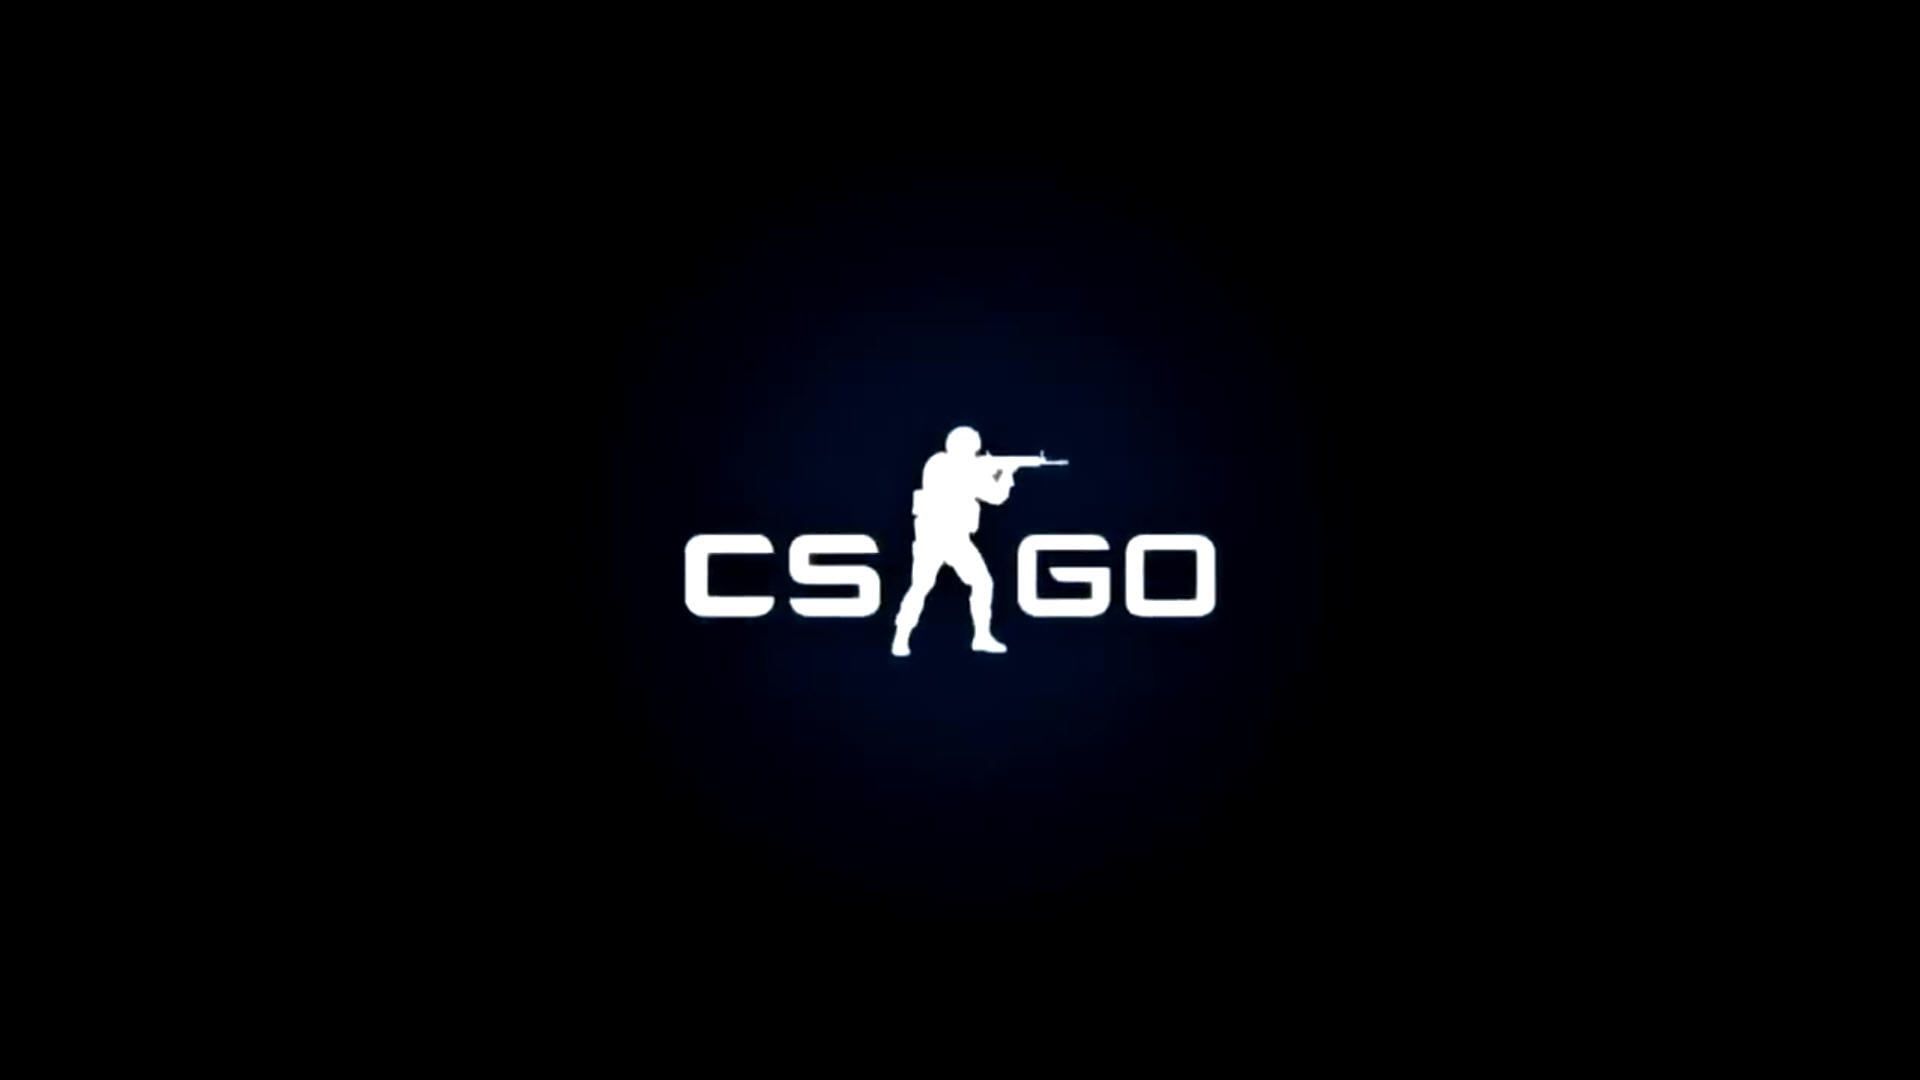 CSGO Logo Wallpapers - Wallpaper Cave